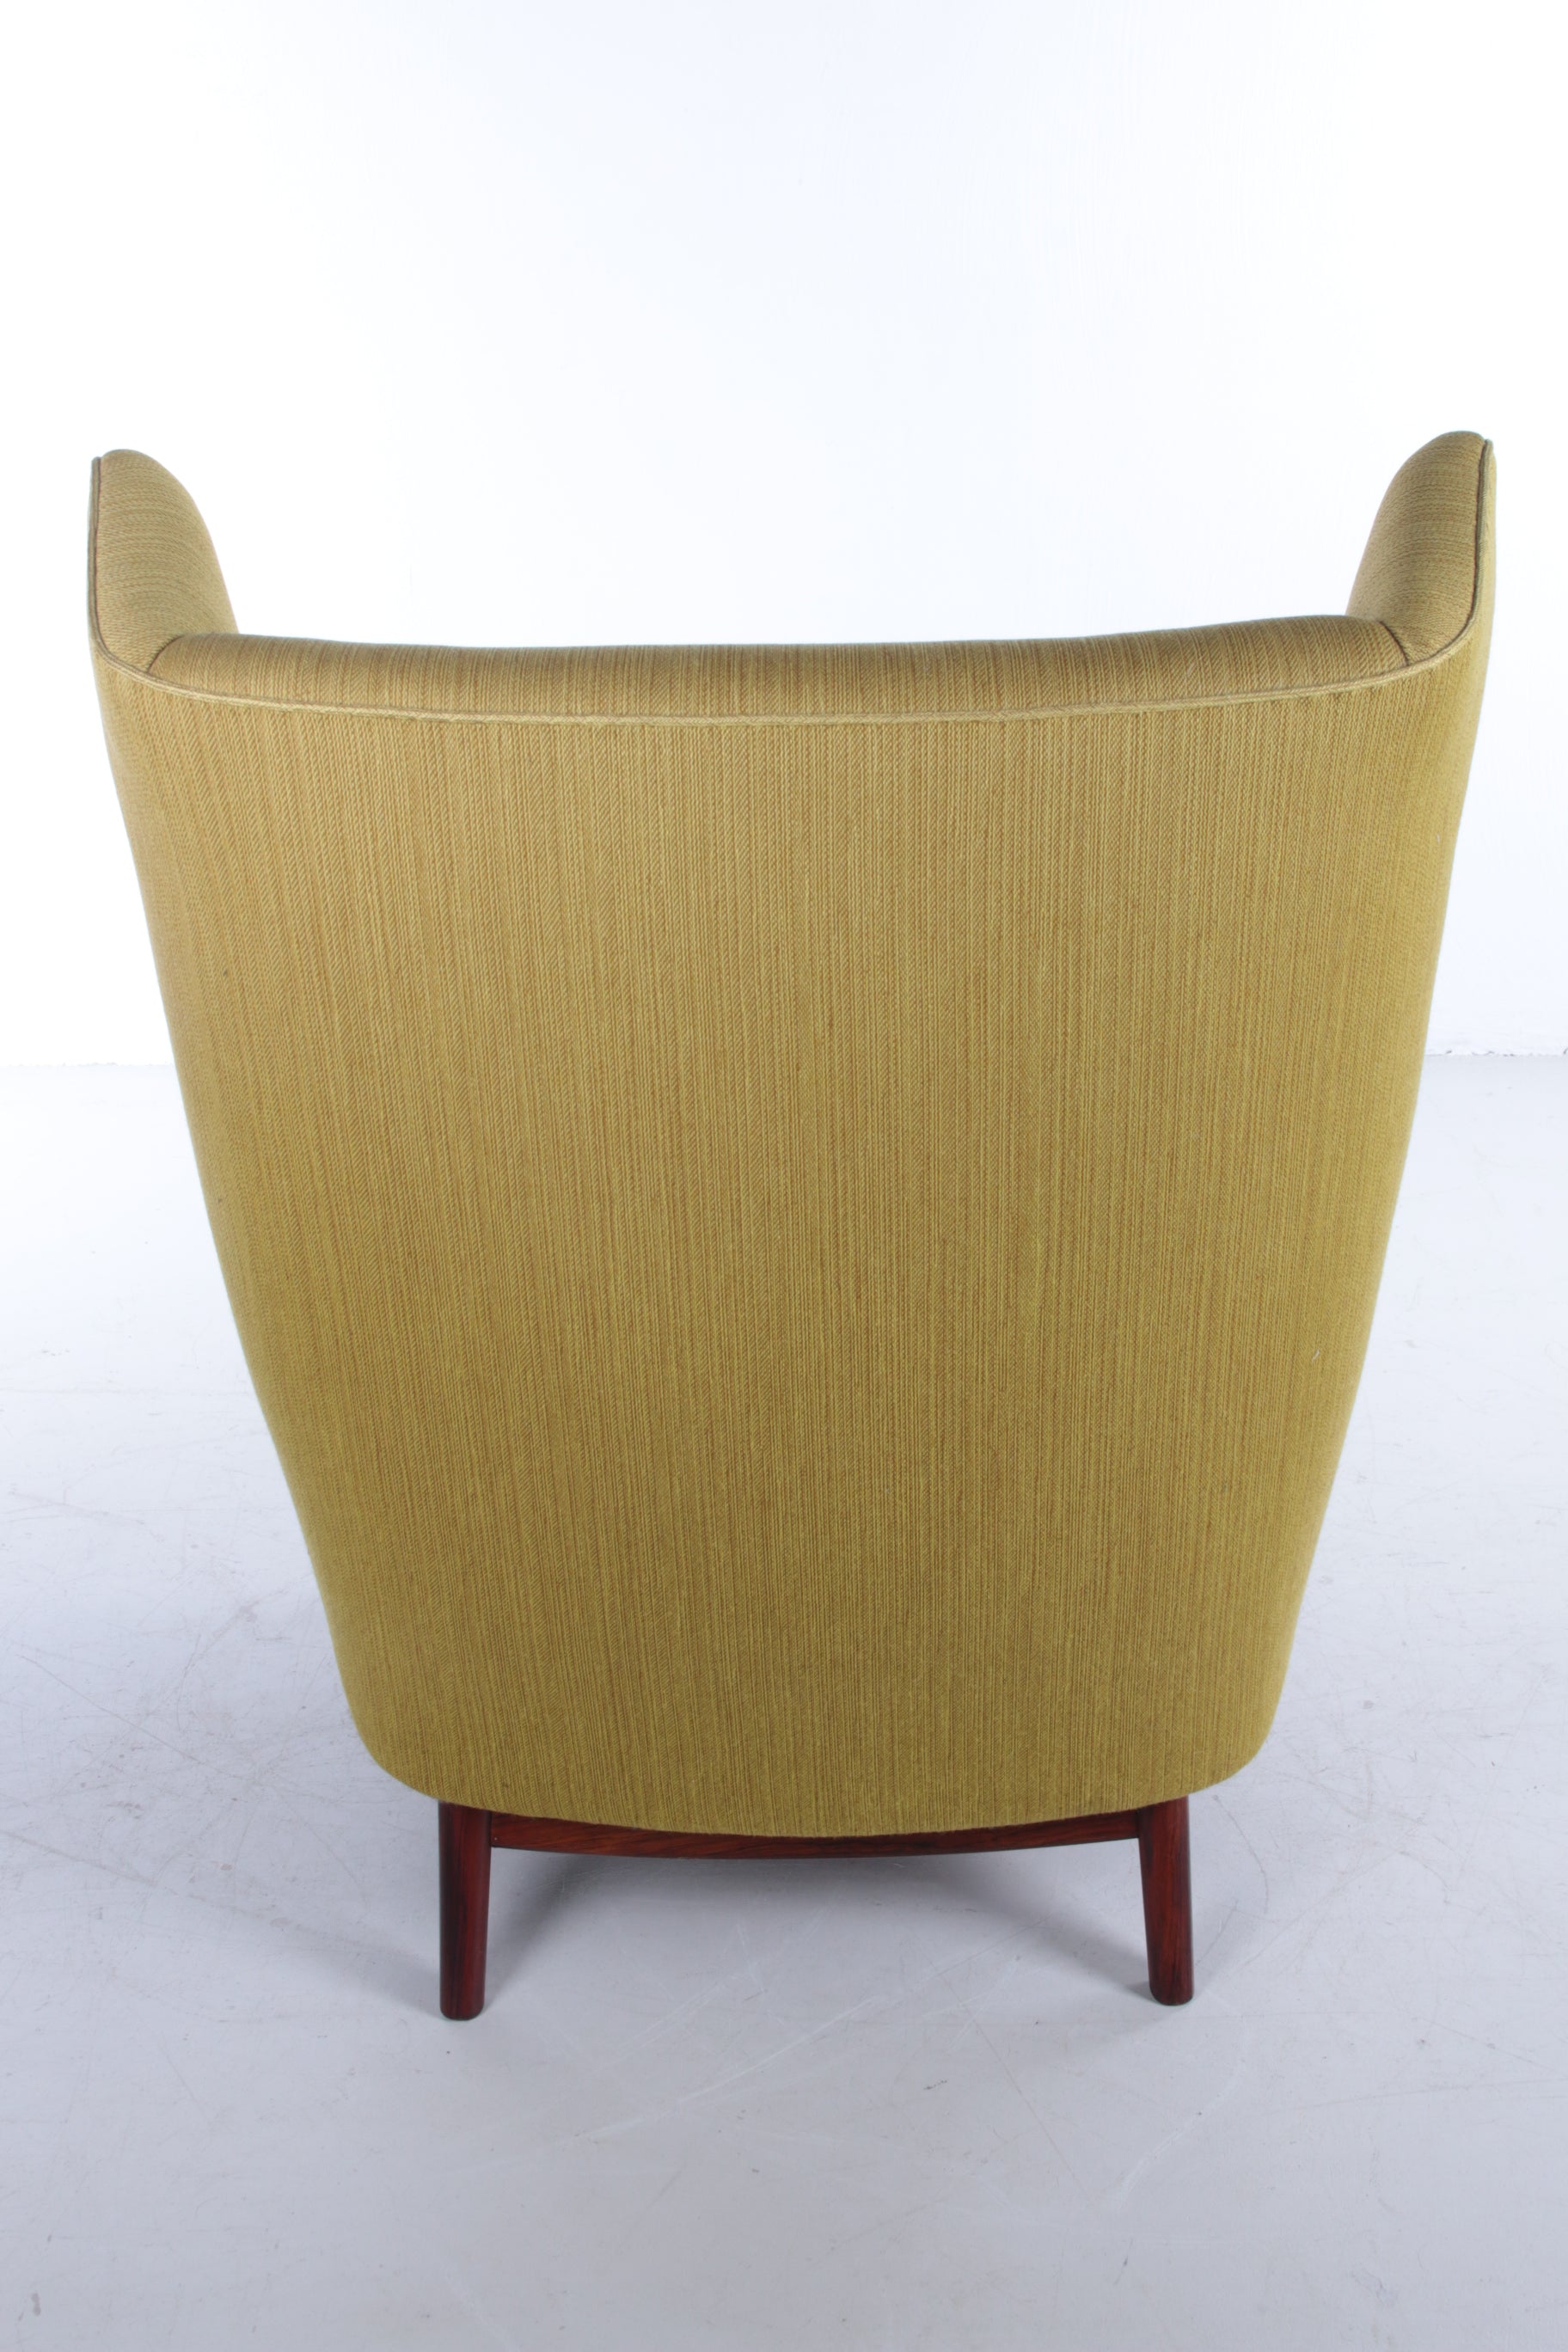 Deense fauteuil met pallisander houten onderstel mosgroen achterkant